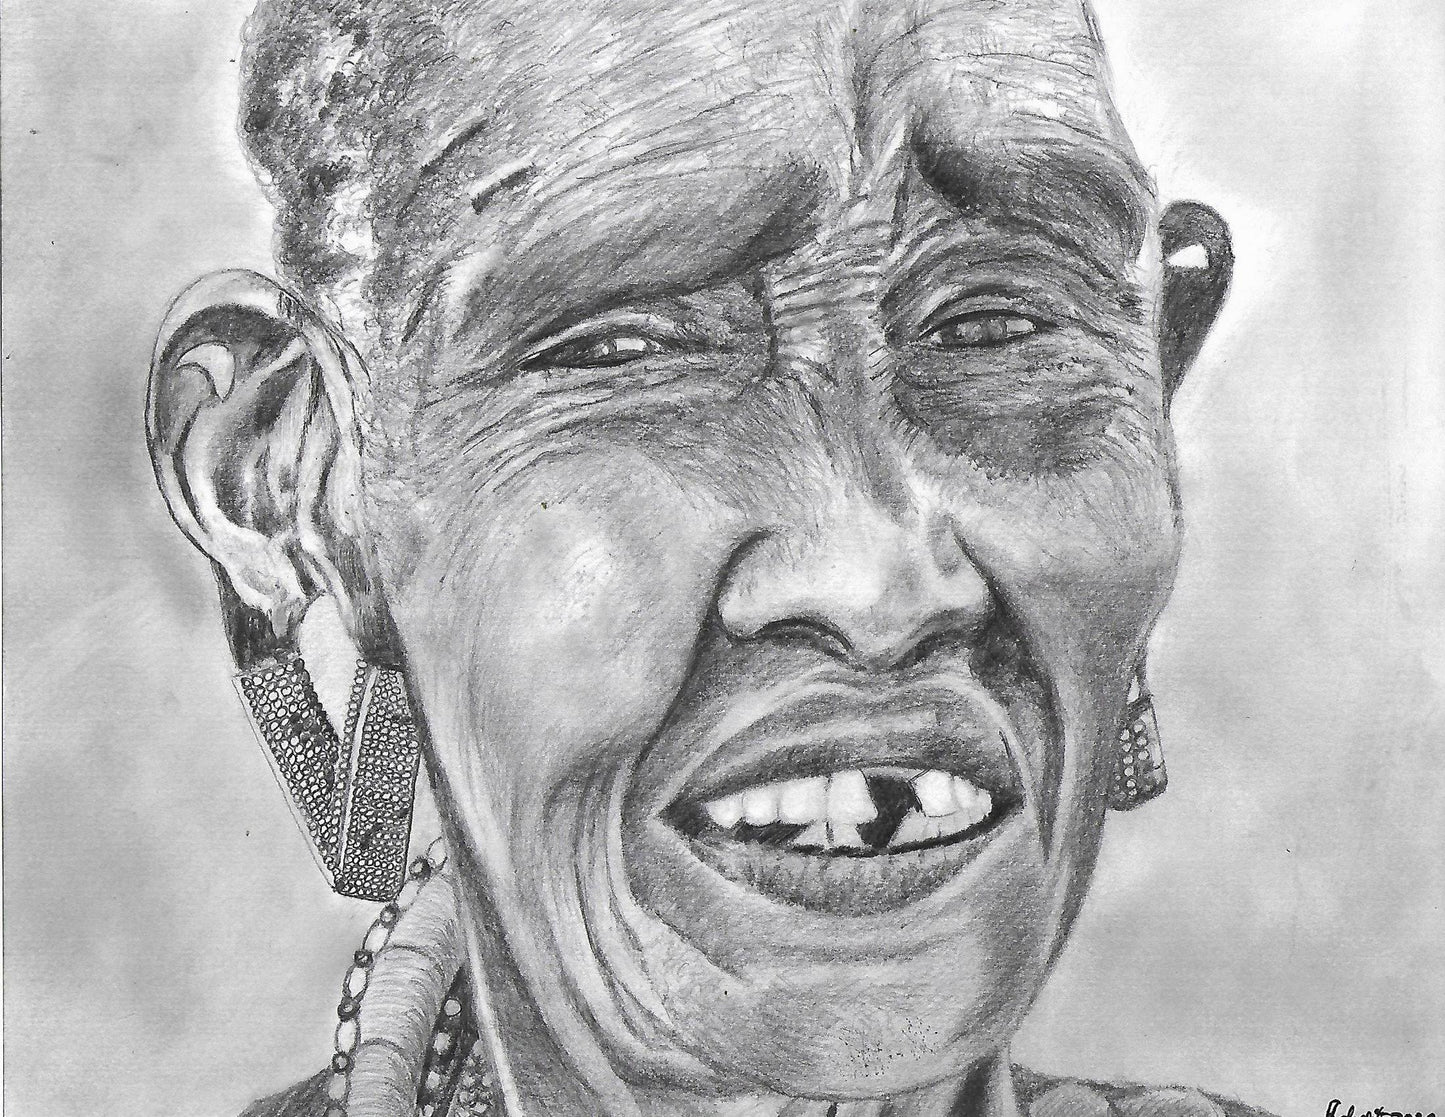 Massai Woman